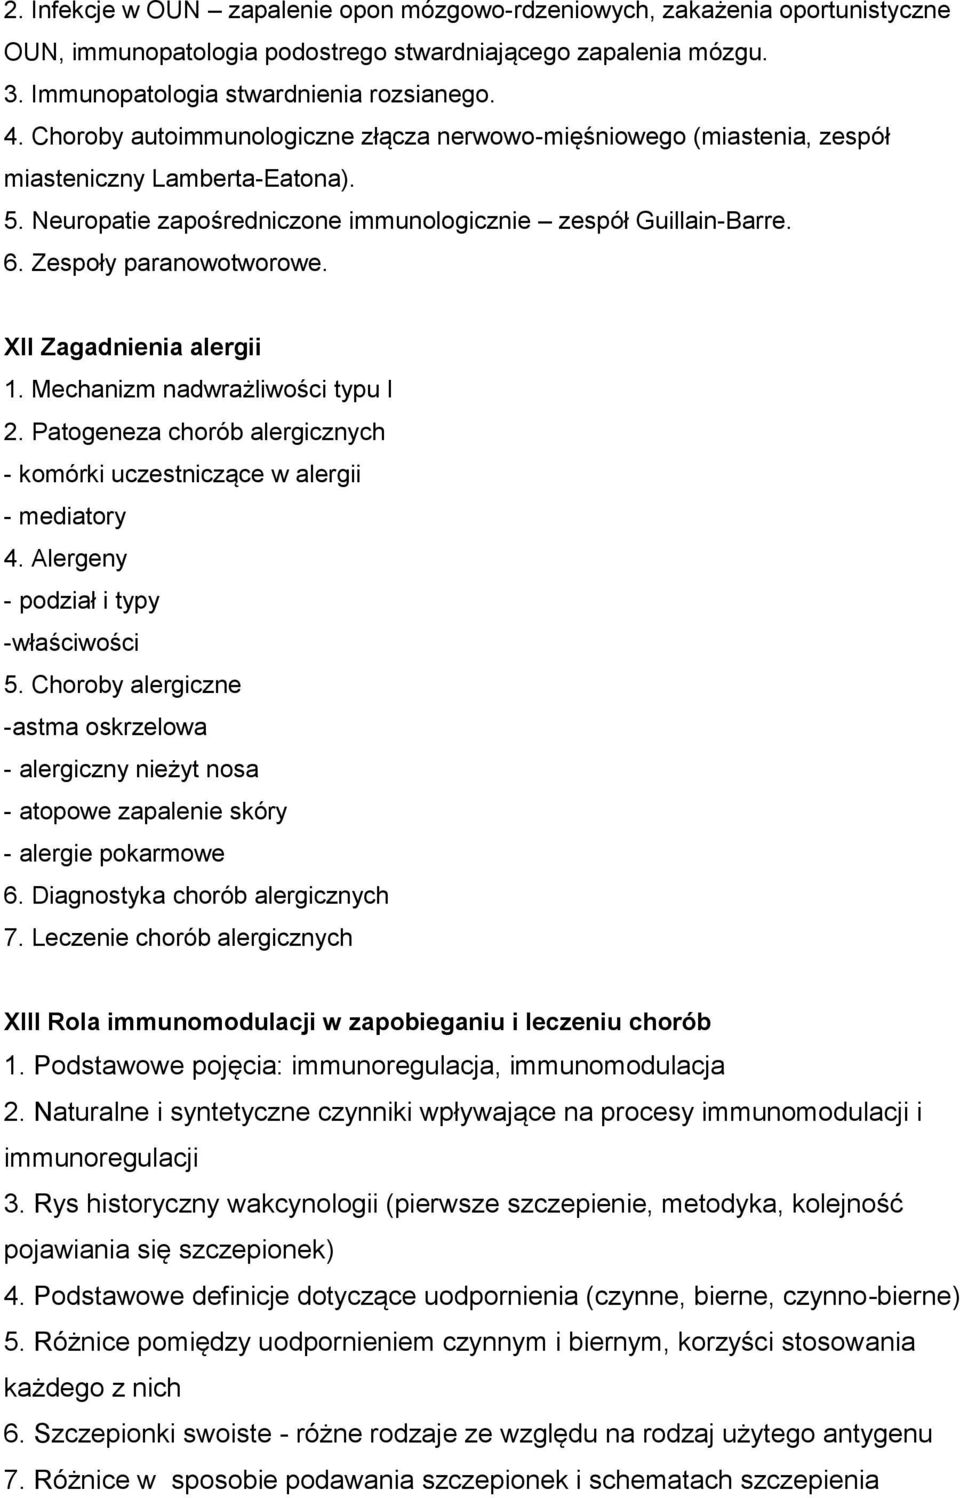 XII Zagadnienia alergii 1. Mechanizm nadwrażliwości typu I 2. Patogeneza chorób alergicznych - komórki uczestniczące w alergii - mediatory 4. Alergeny - podział i typy -właściwości 5.